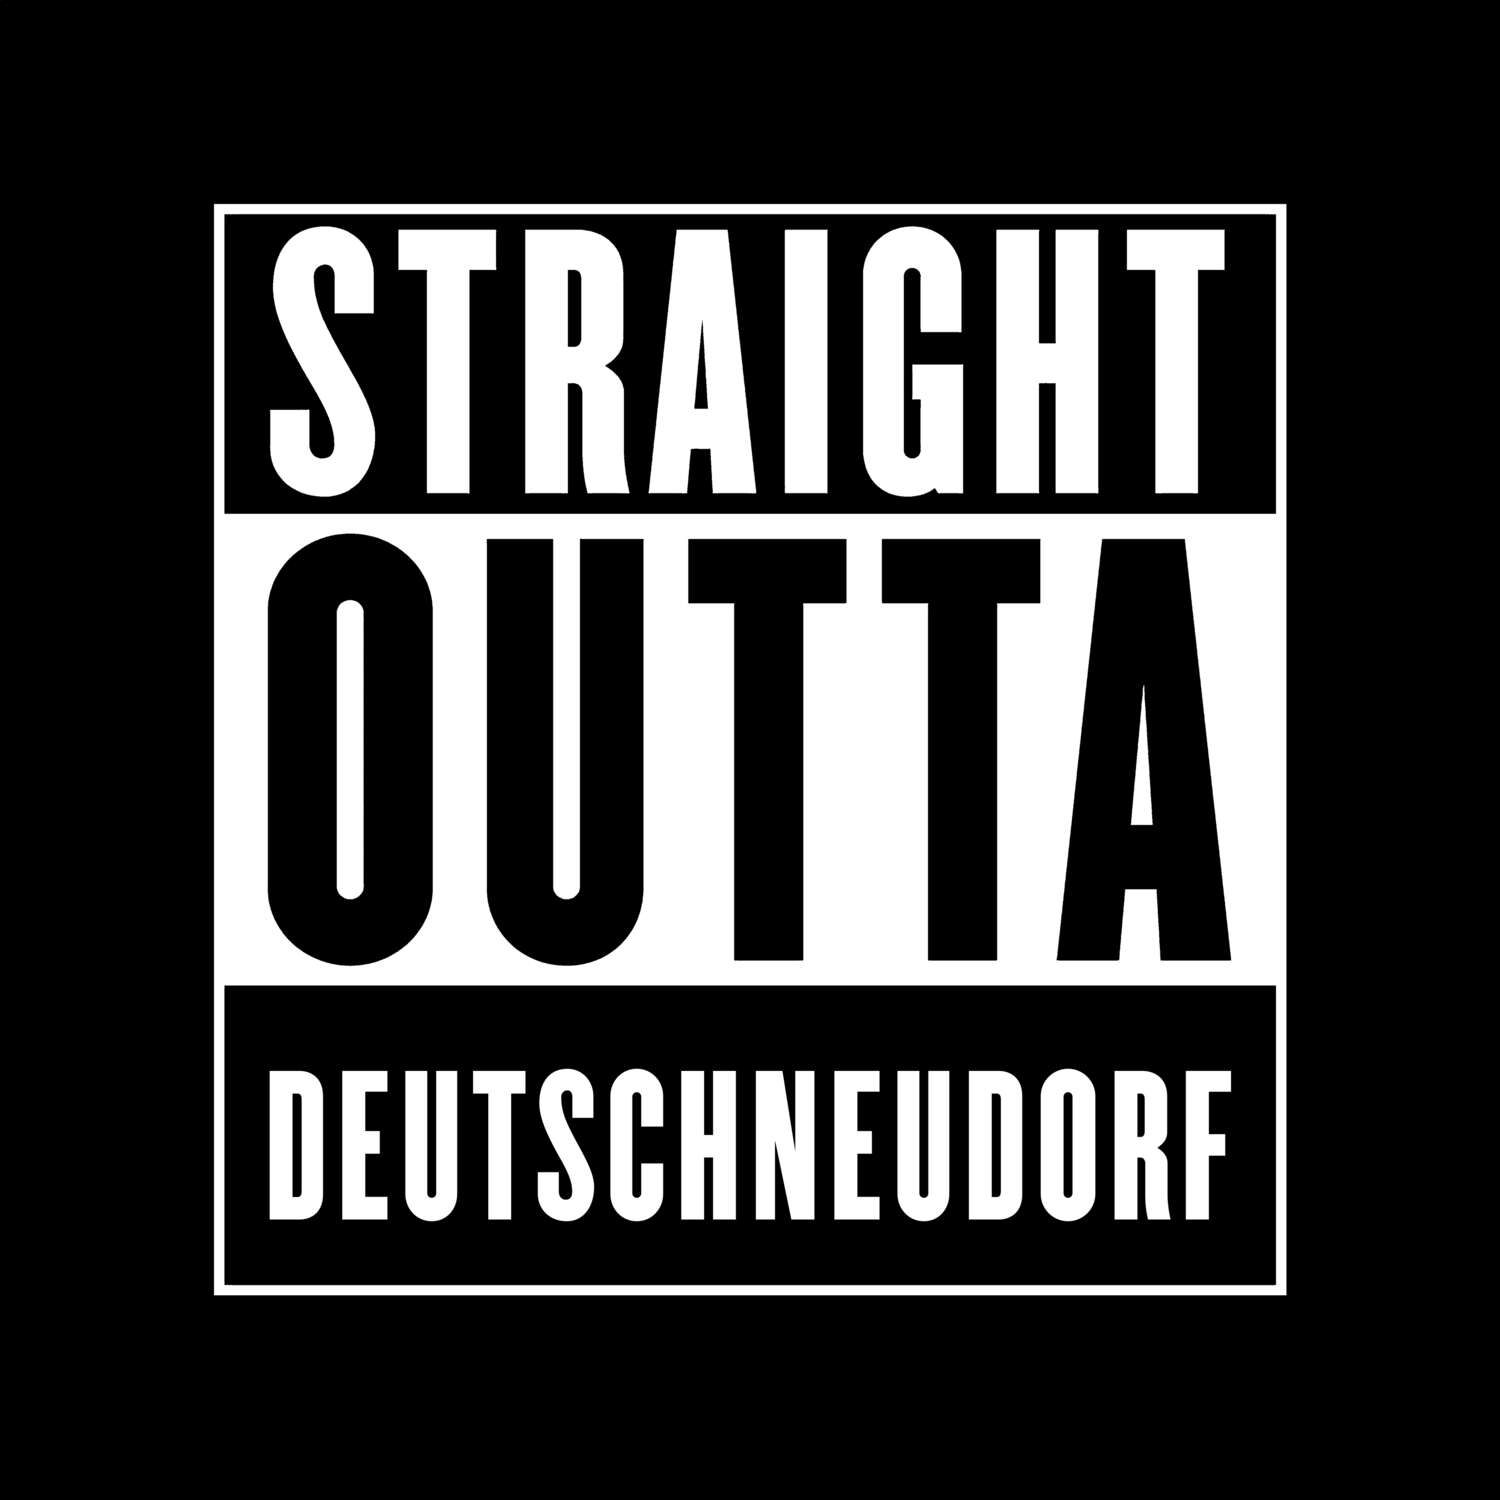 Deutschneudorf T-Shirt »Straight Outta«